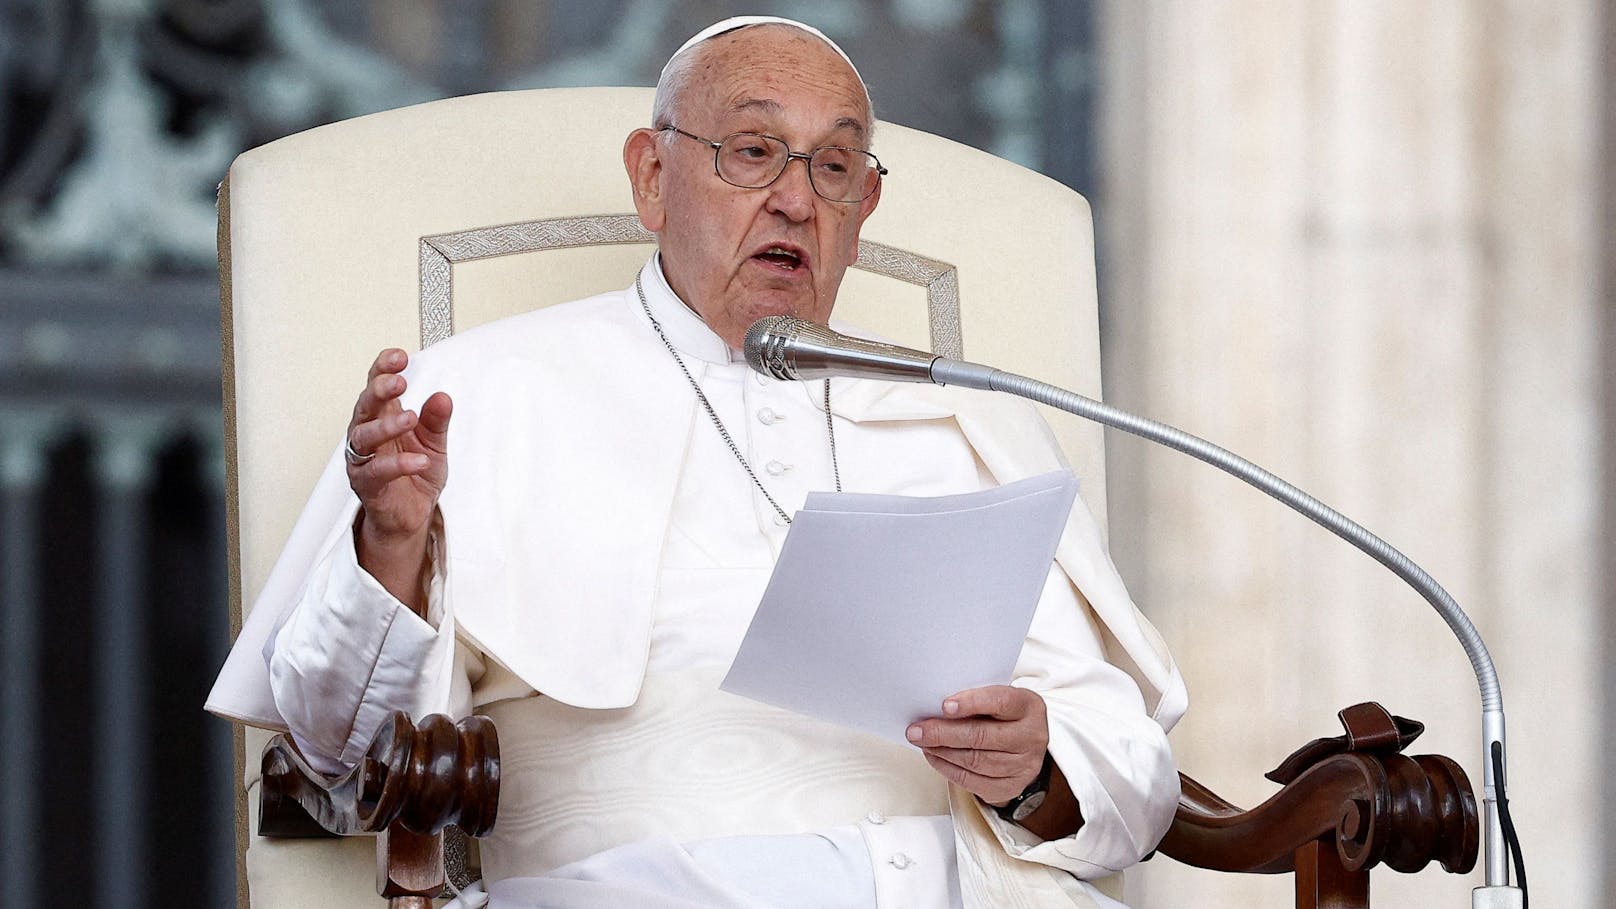 "Zu viel Schwuchtelei" – Papst empört mit Aussage